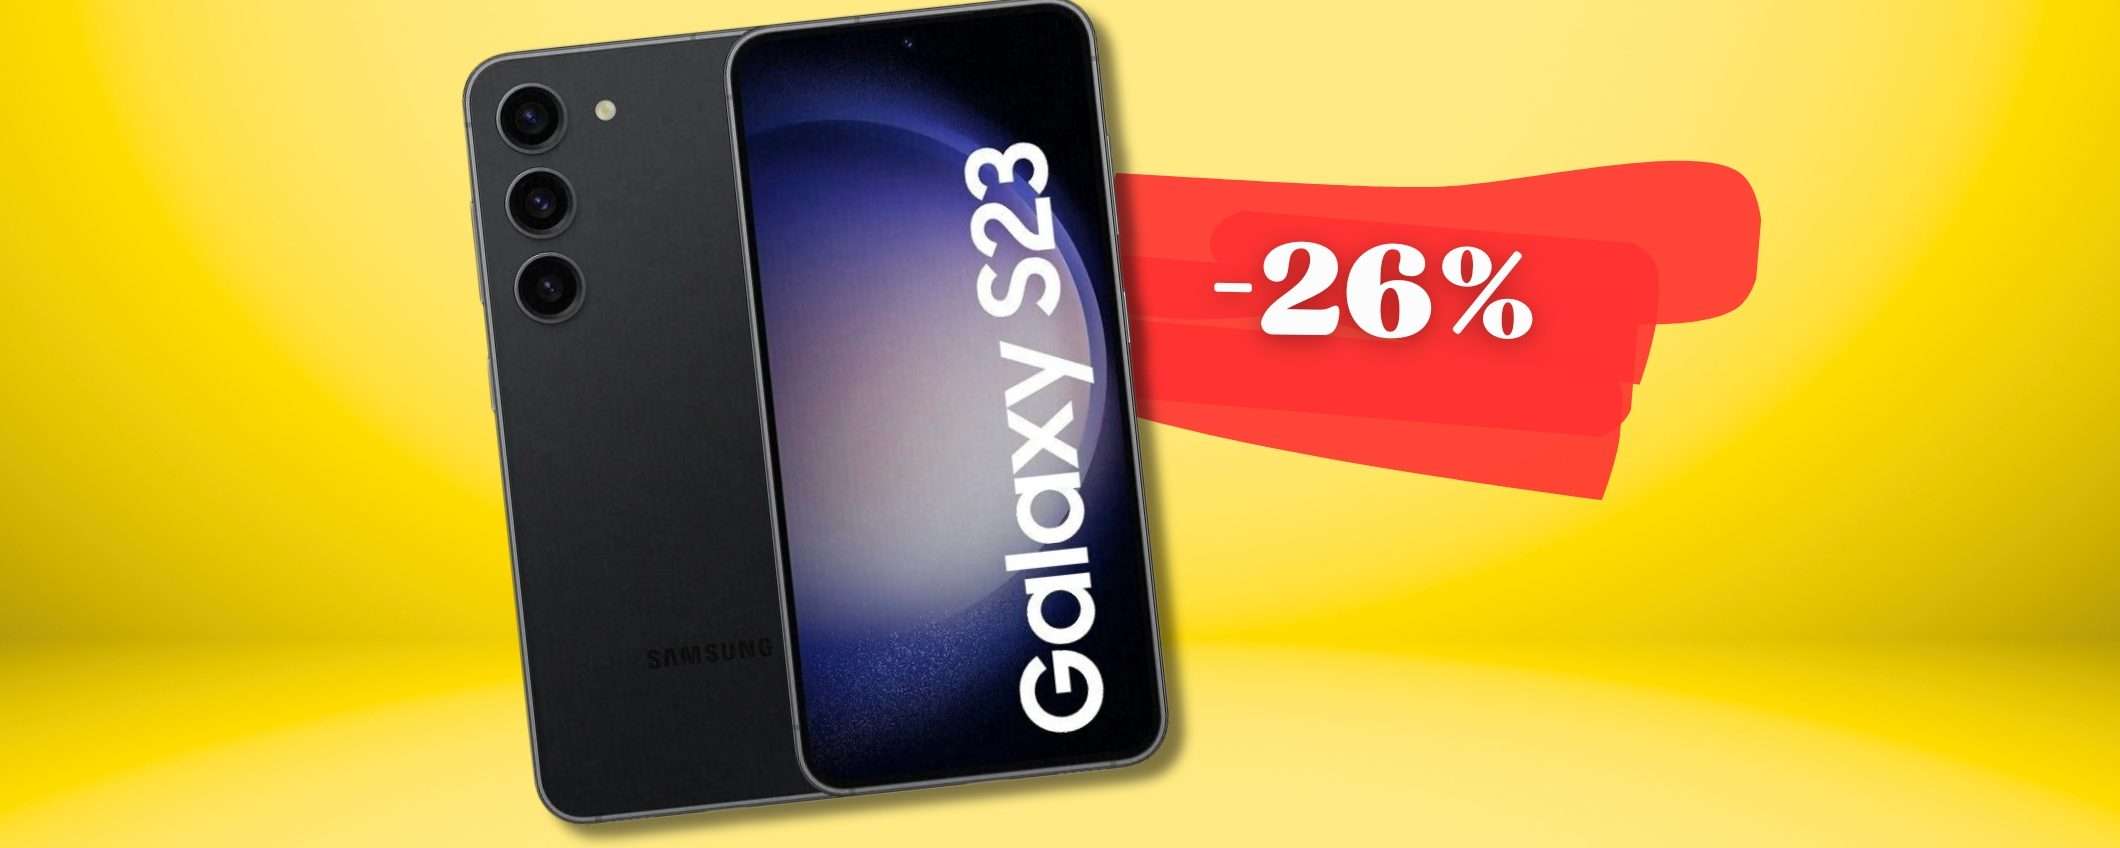 Samsung Galaxy S23 con connessione 5G e display BOMBA a prezzaccio